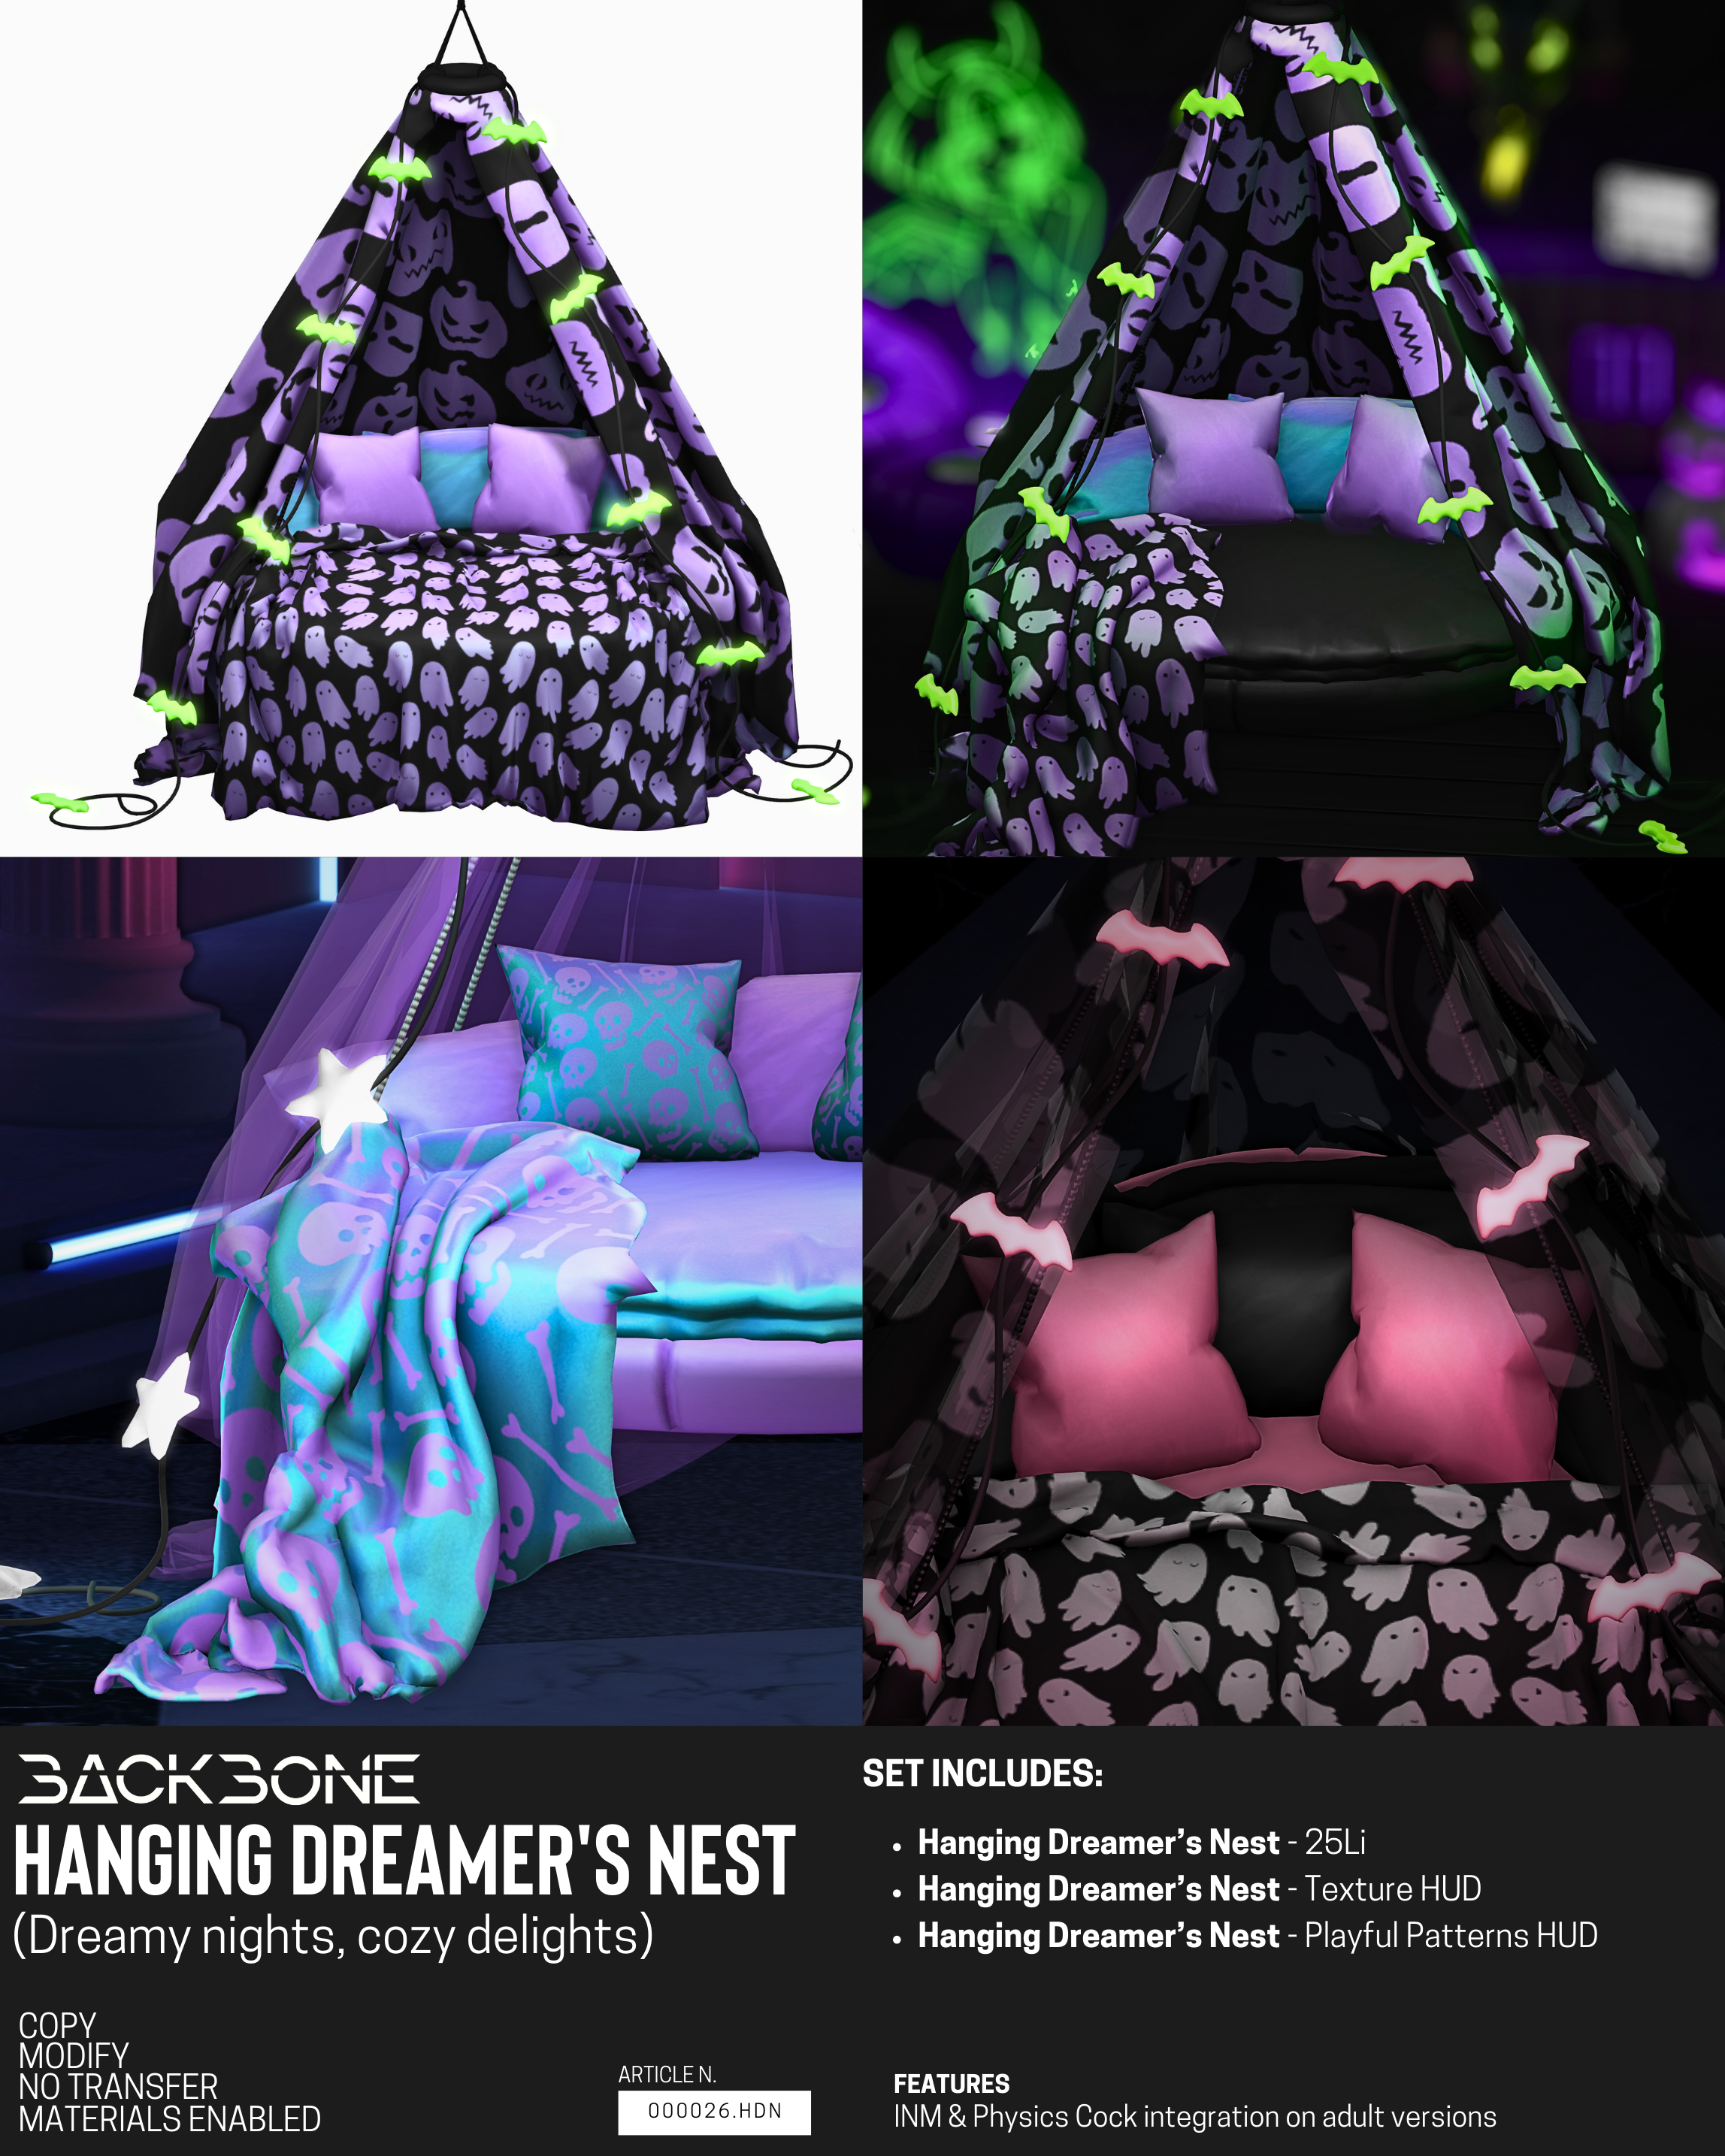 BackBone – Hanging Dreamer’s Nest